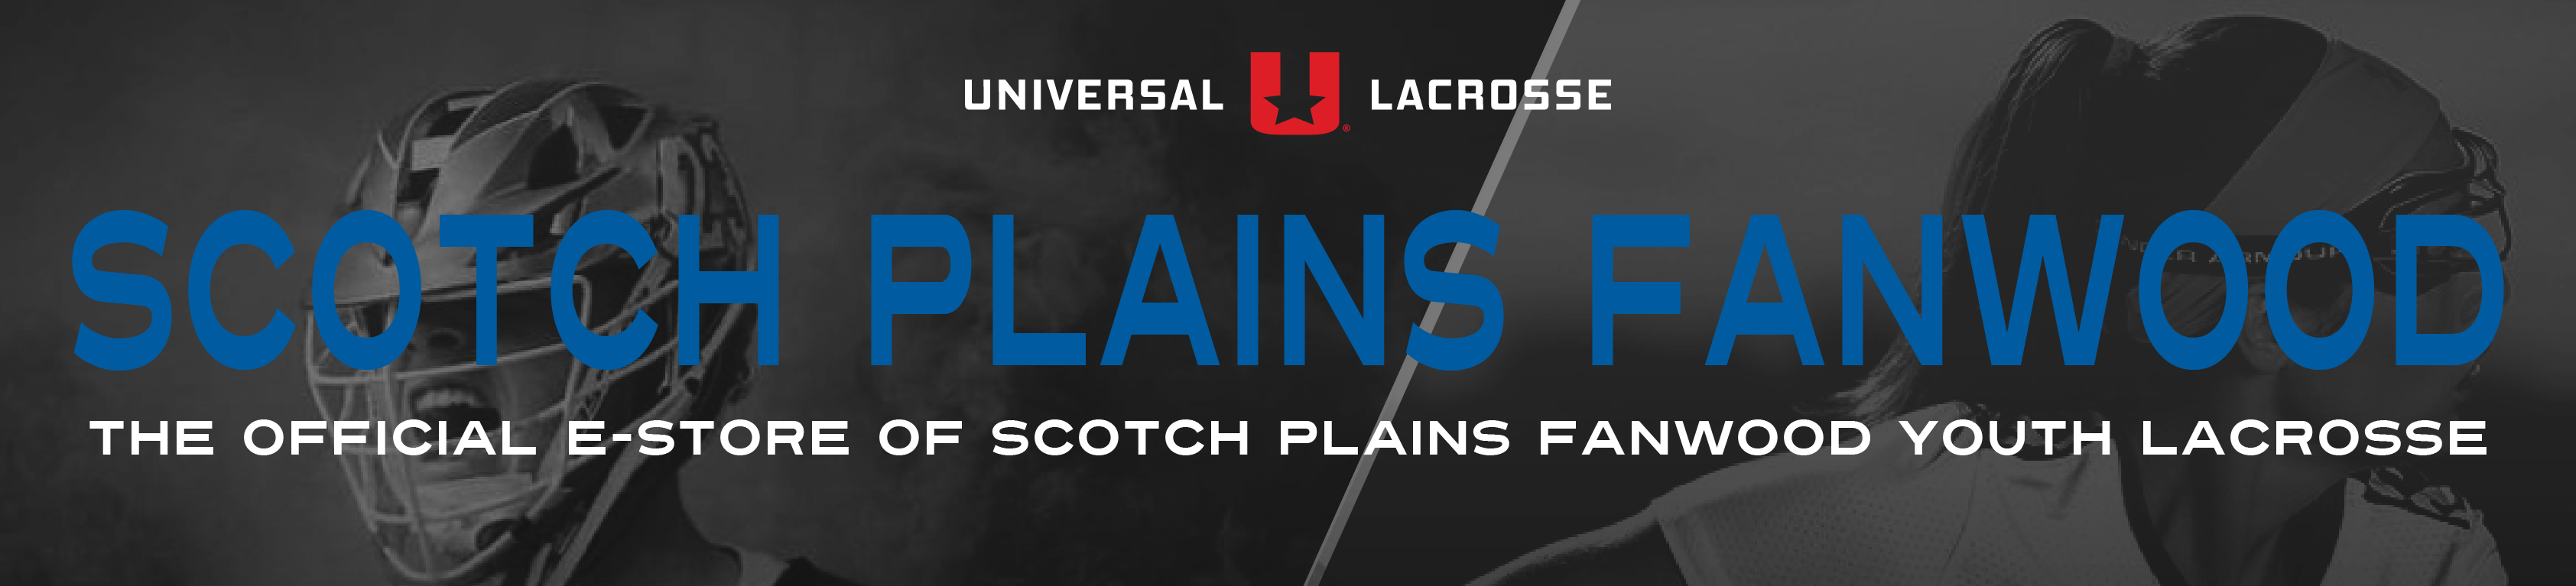 Scotch Plains Fanwood Youth Lacrosse Uniforms